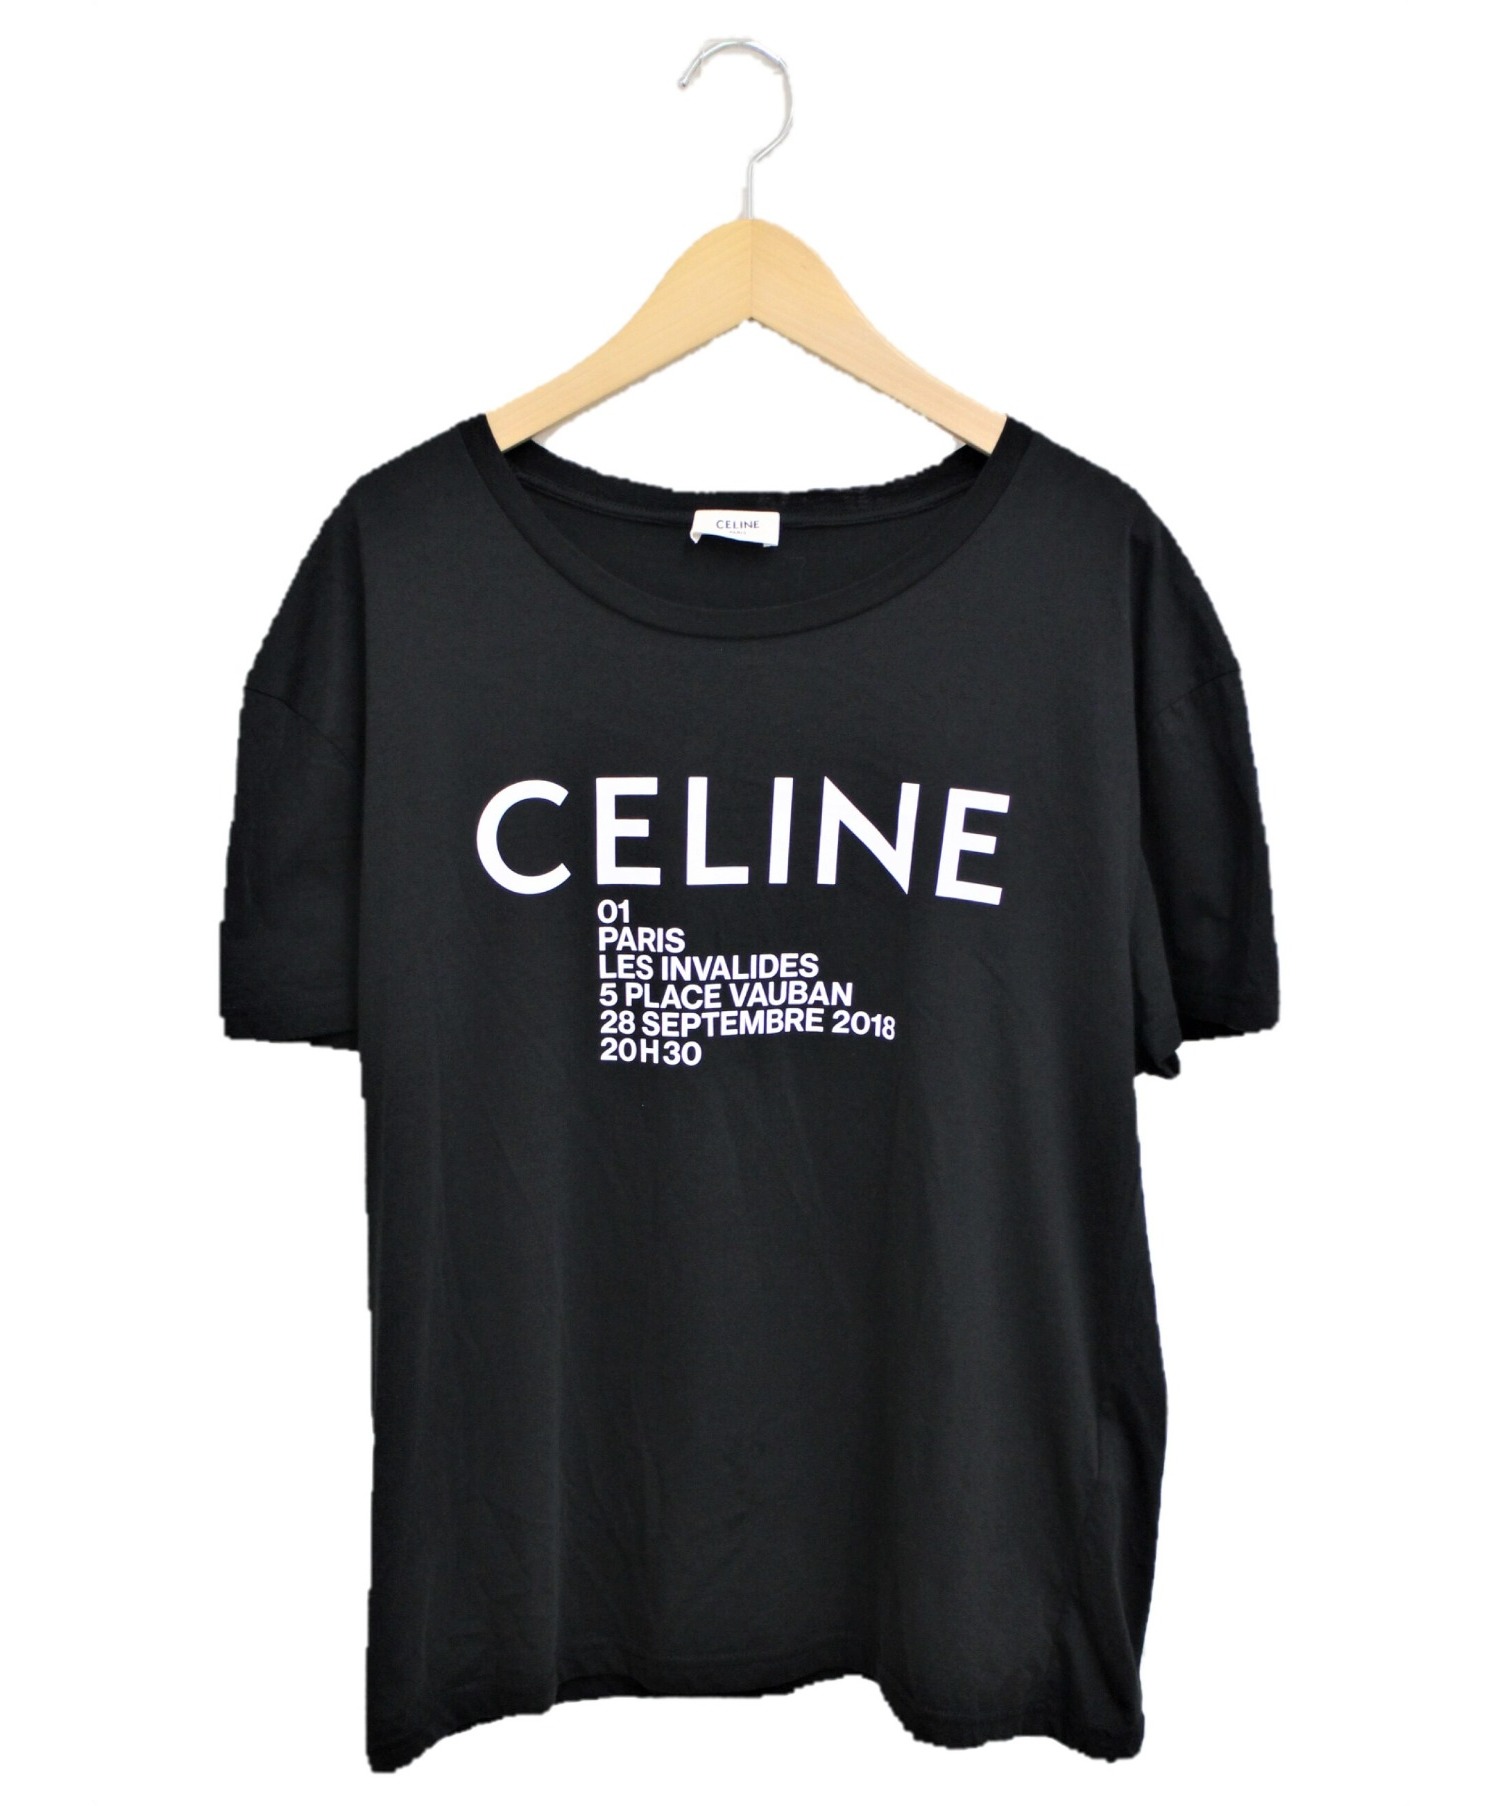 セリーヌ CELINE Tシャツ サイズ M 売り出し特注品 www.esn-spain.org